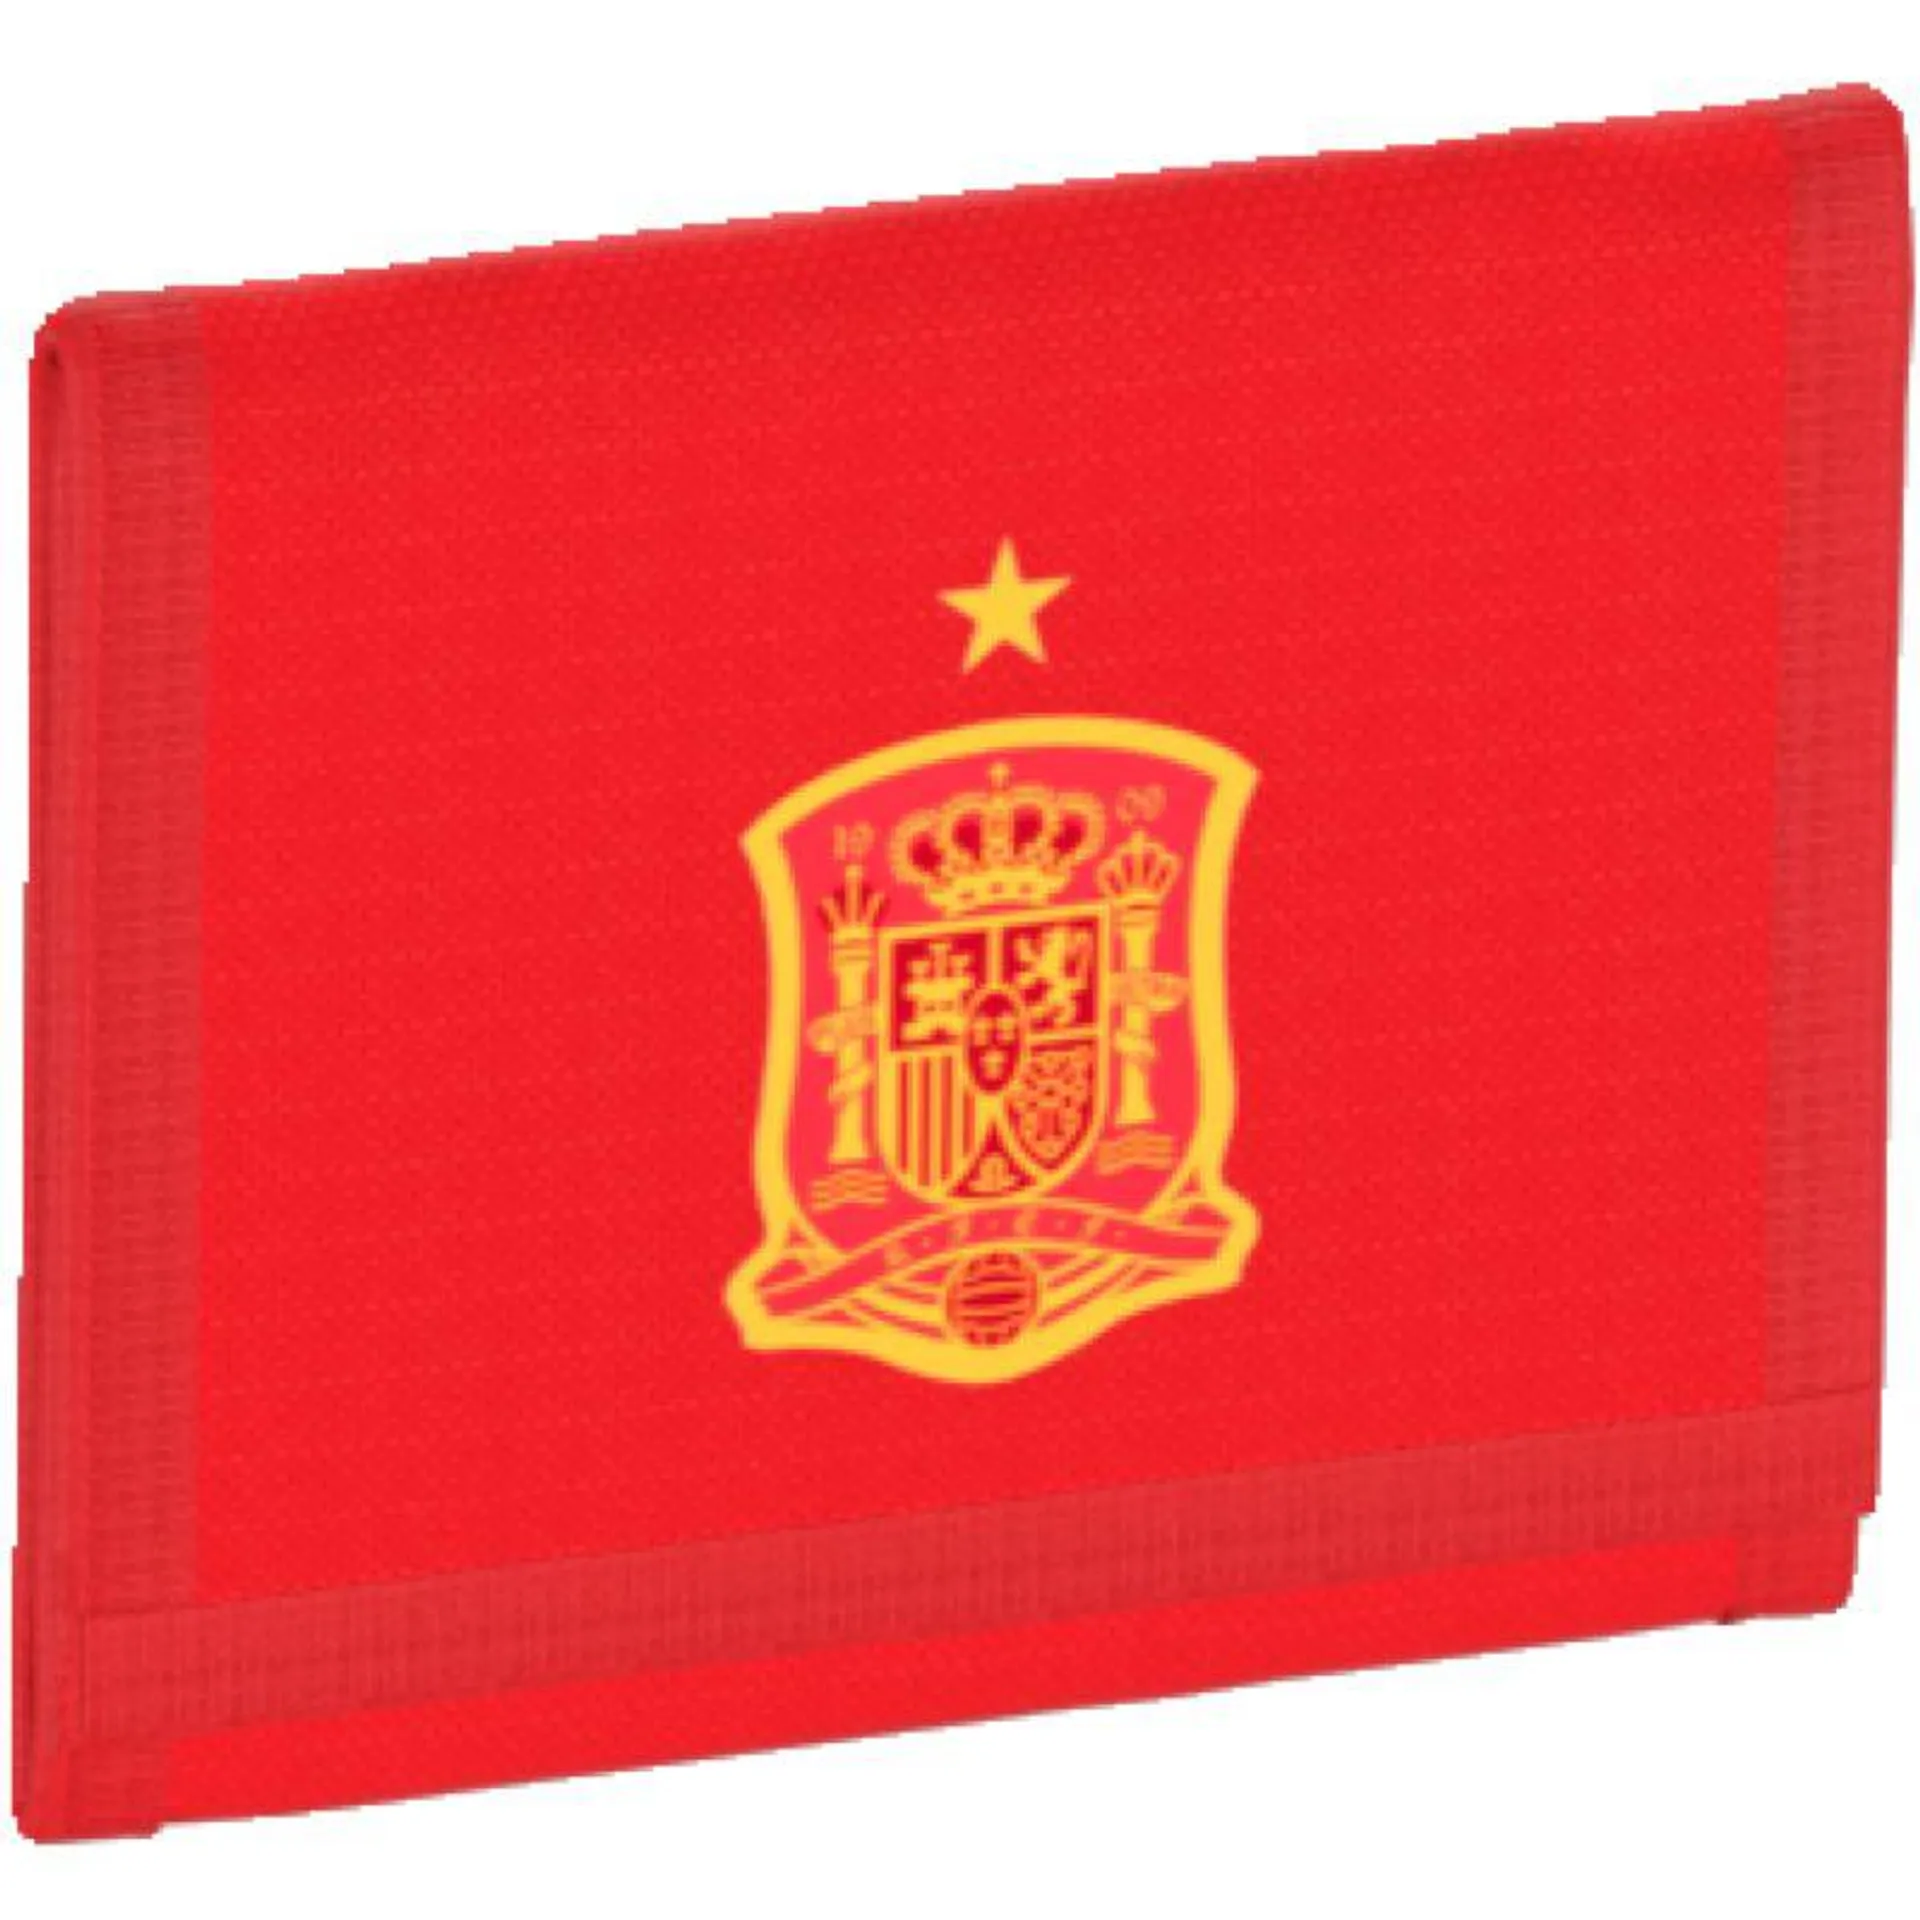 Spain Wallet - Red 2018 2019